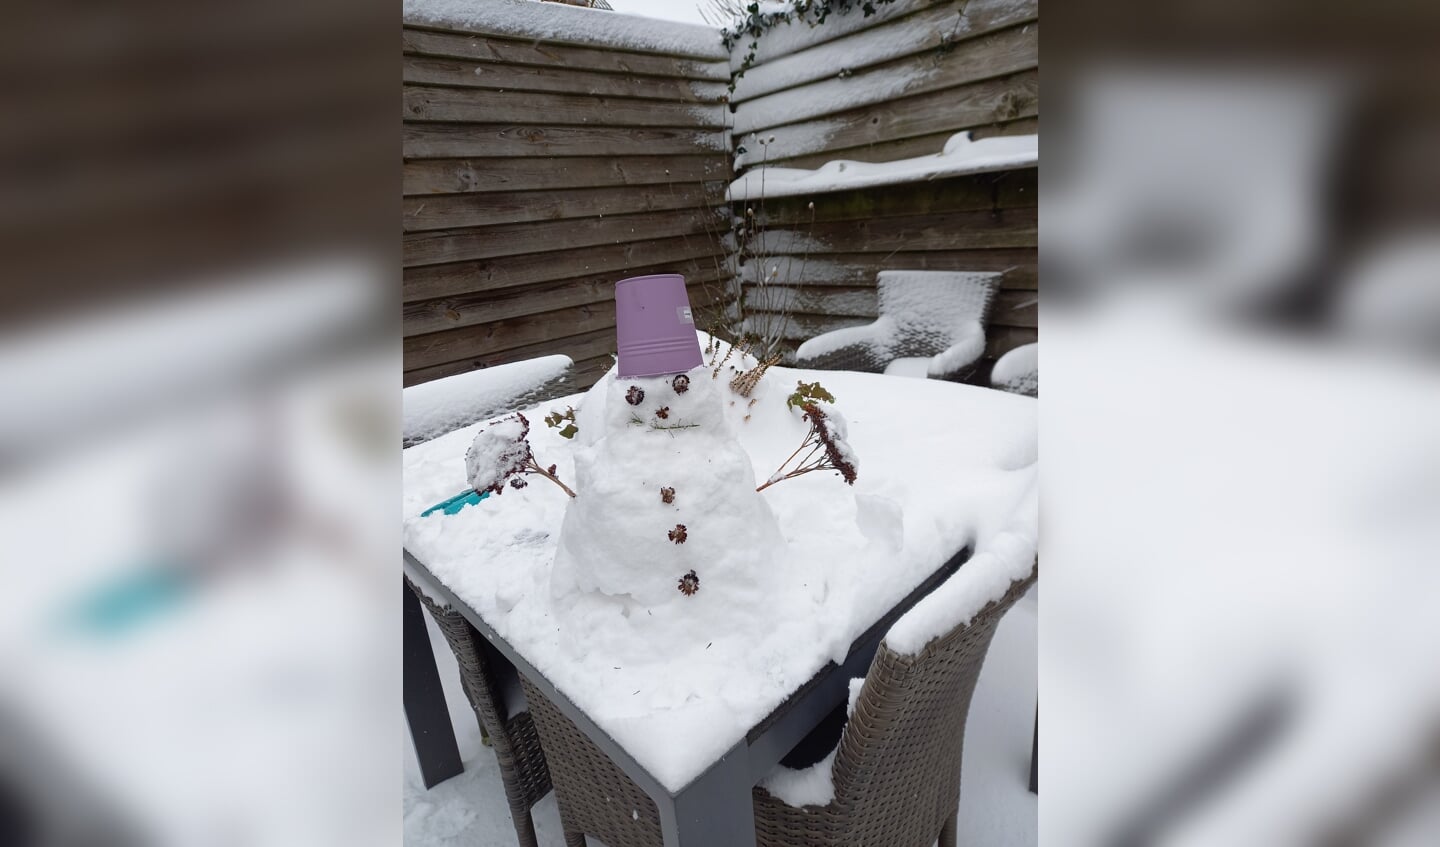 Meriam Beljon ging in de achtertuin aan de slag. "Wat een heerlijke winterperiode maken we mee in coronatijd. Op mijn 62e word ik daar nog steeds blij van en heb ik uit gekkigheid een kleine sneeuwpop op onze tuintafel gemaakt."